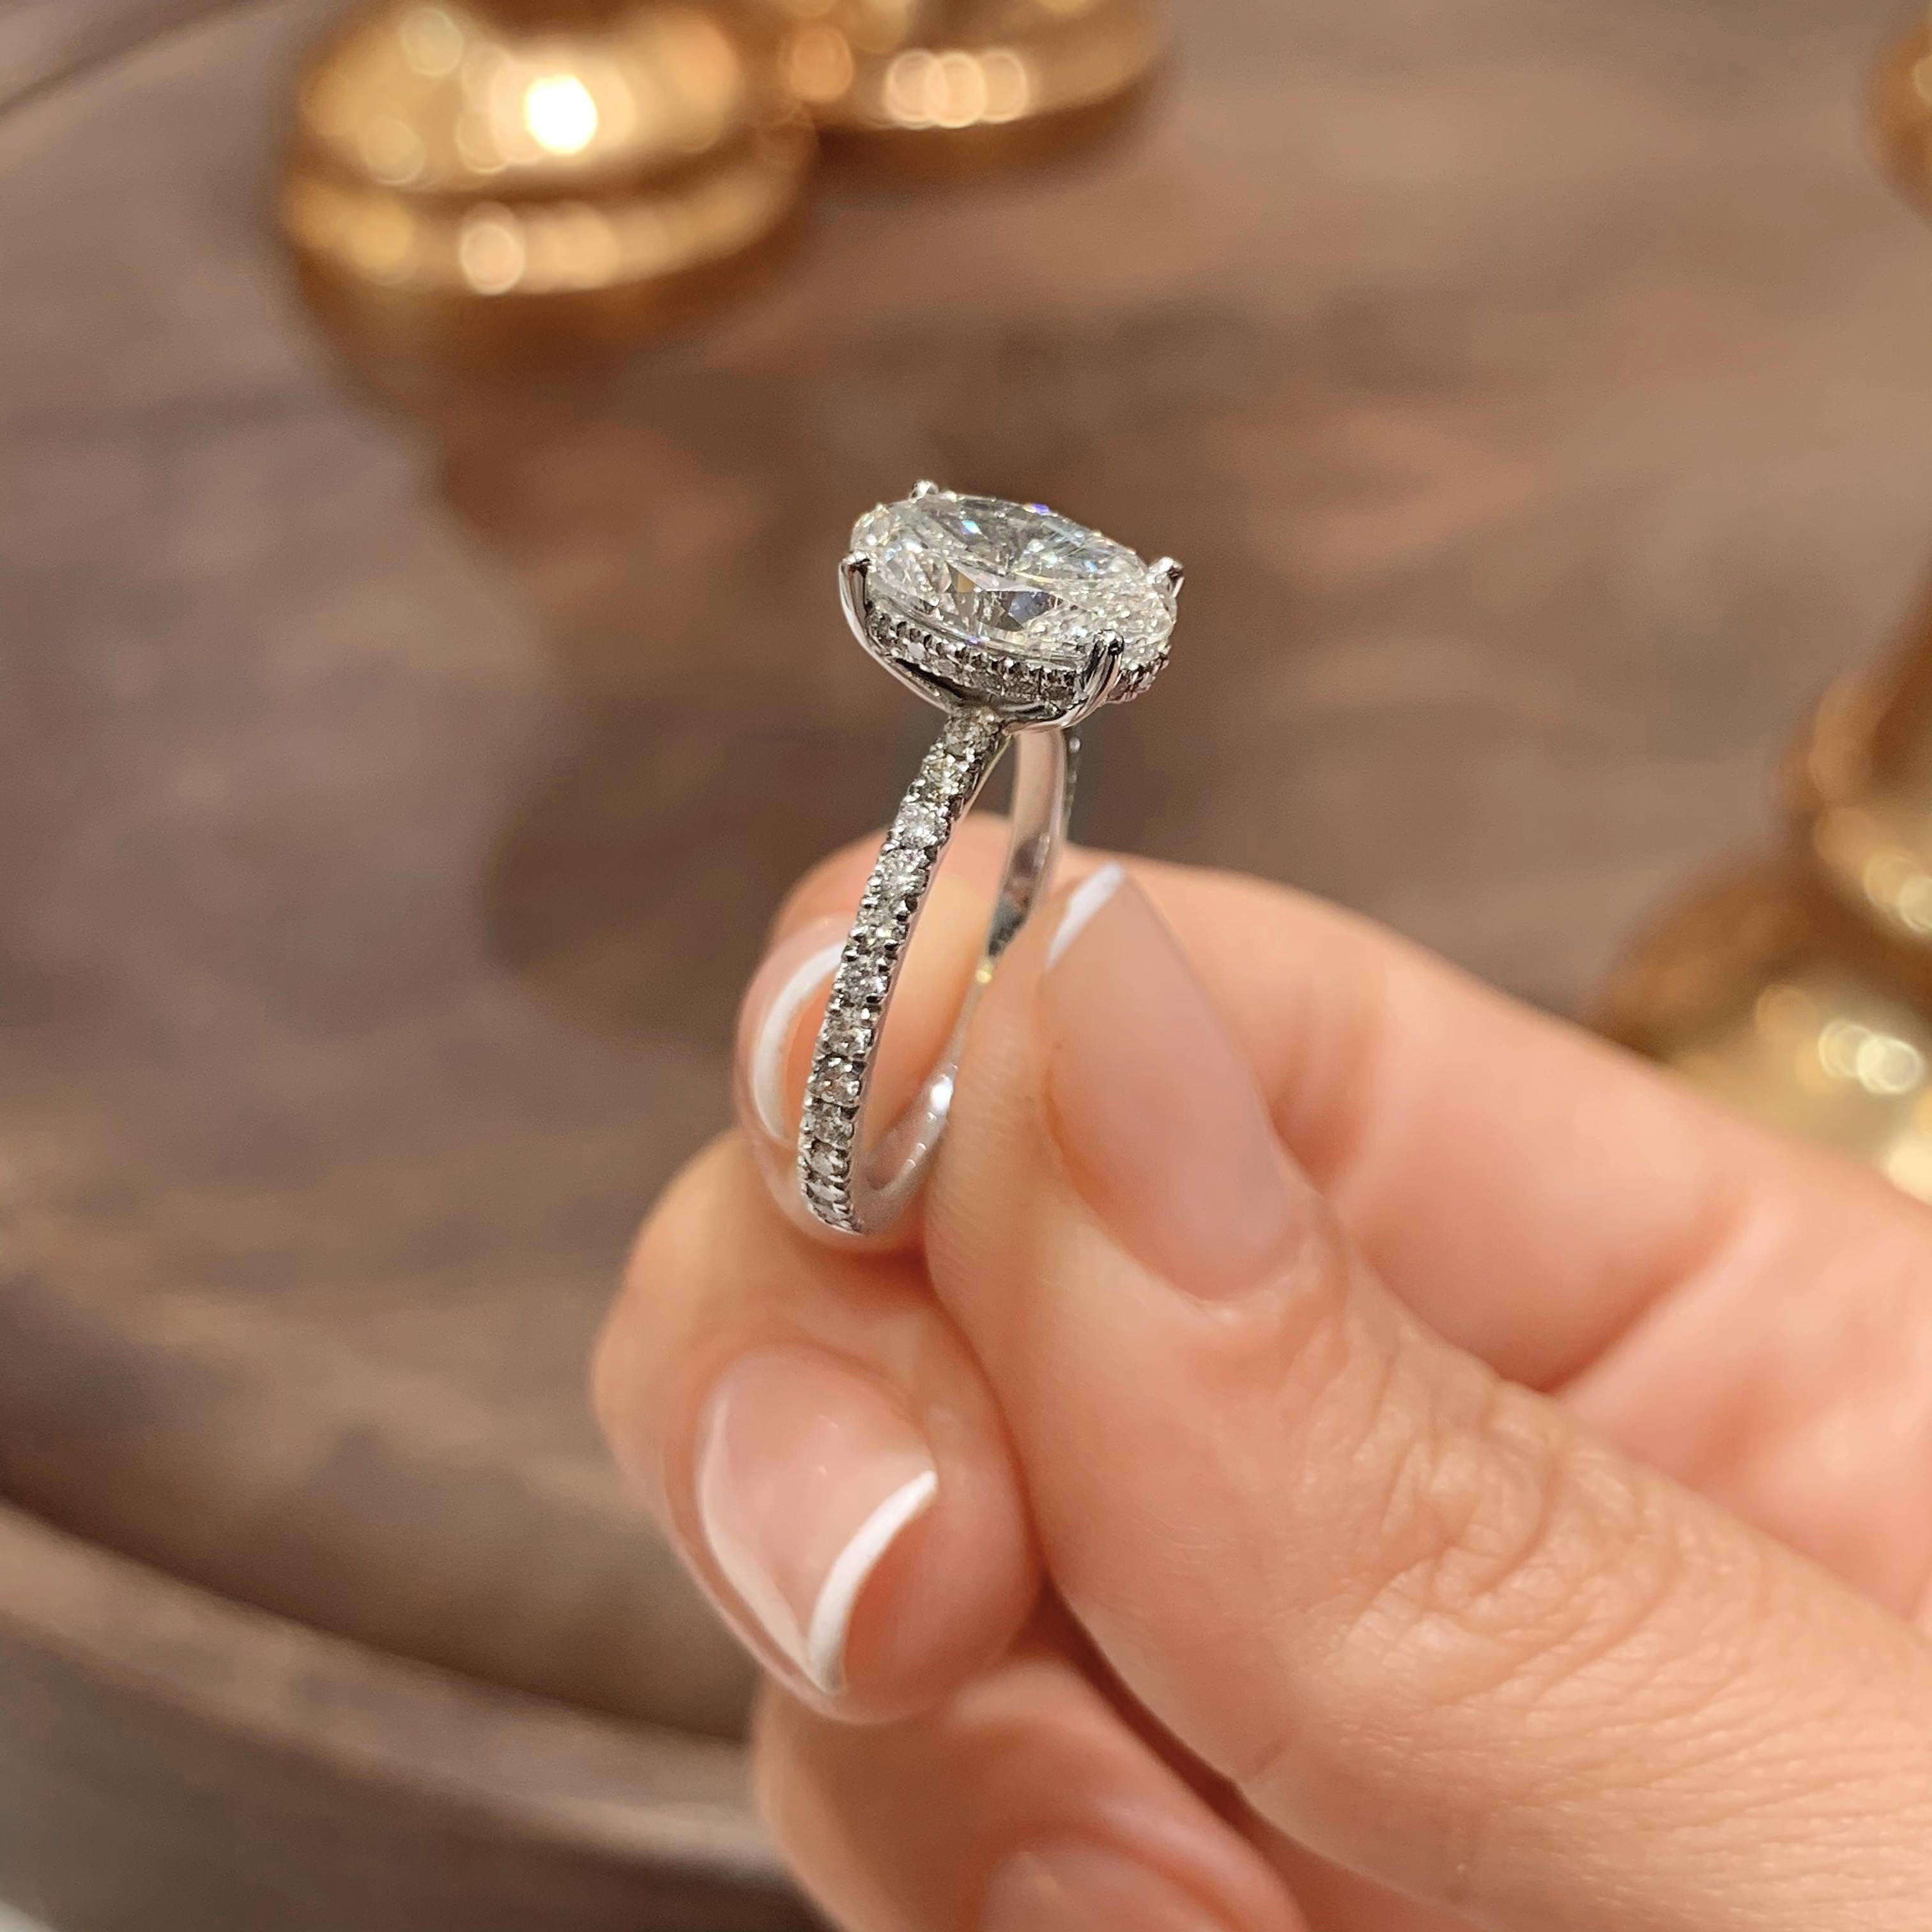 Lucy Lab Grown Diamond Ring   (2.5 Carat) -18K White Gold